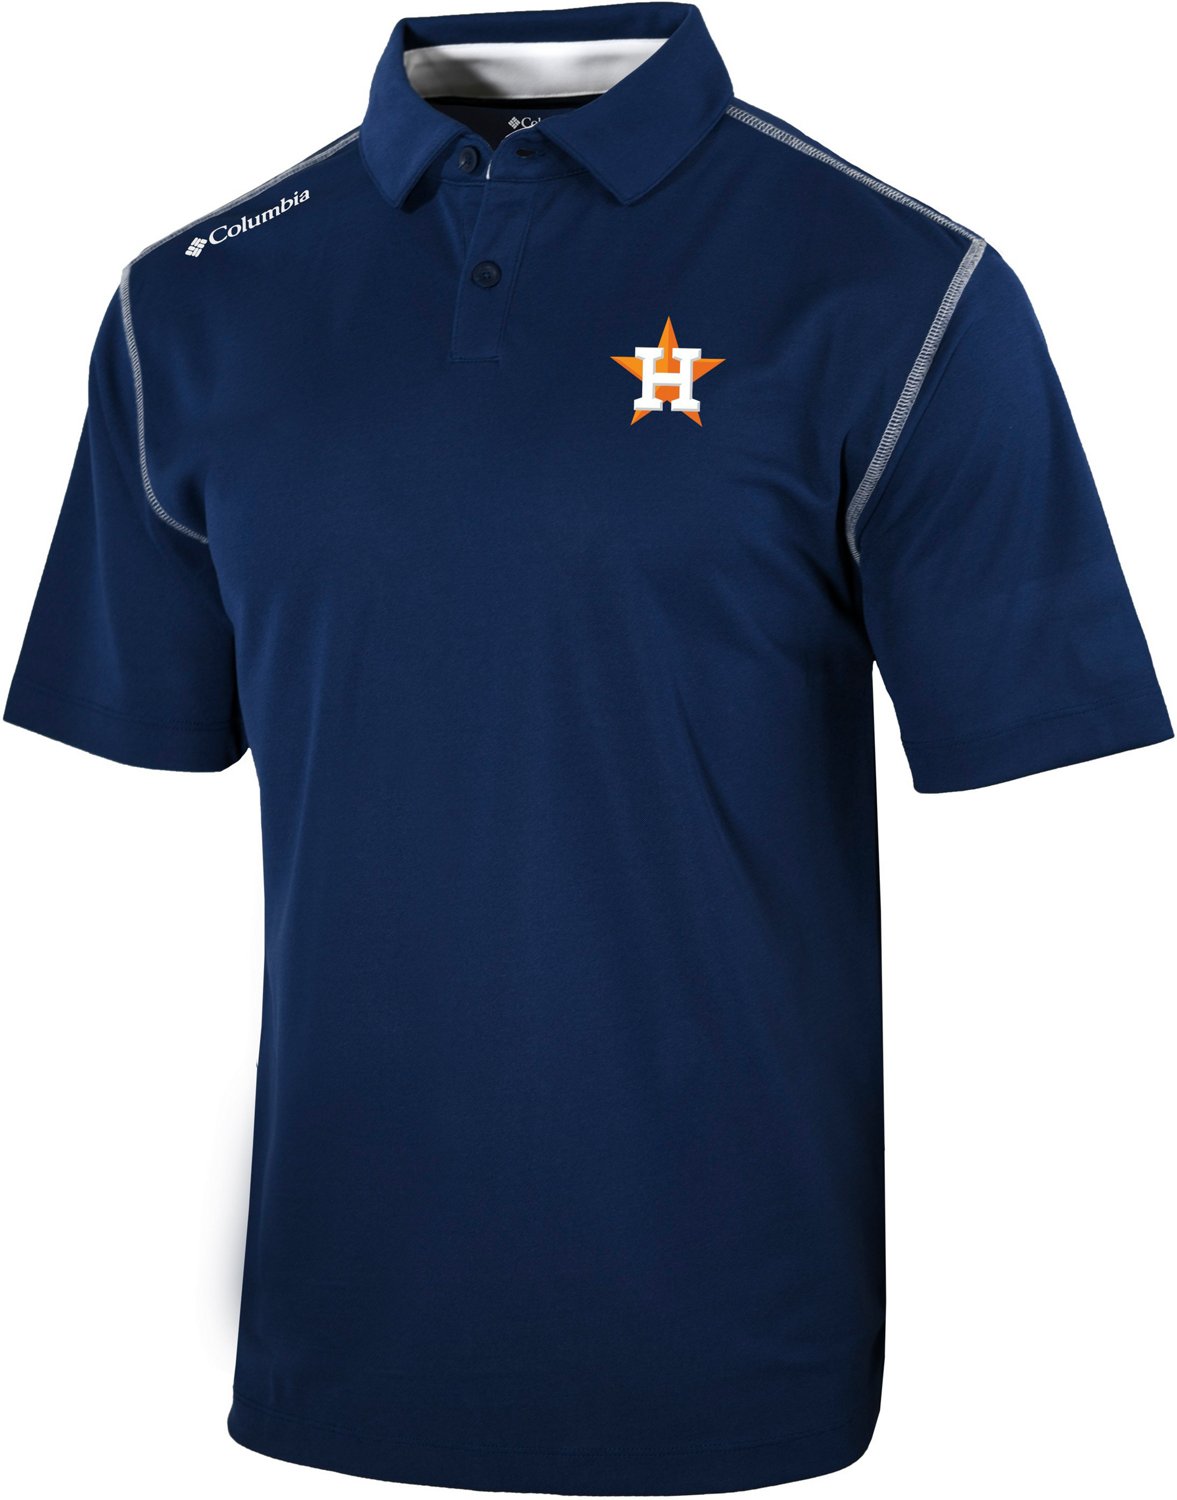 Columbia for MLB Shirts